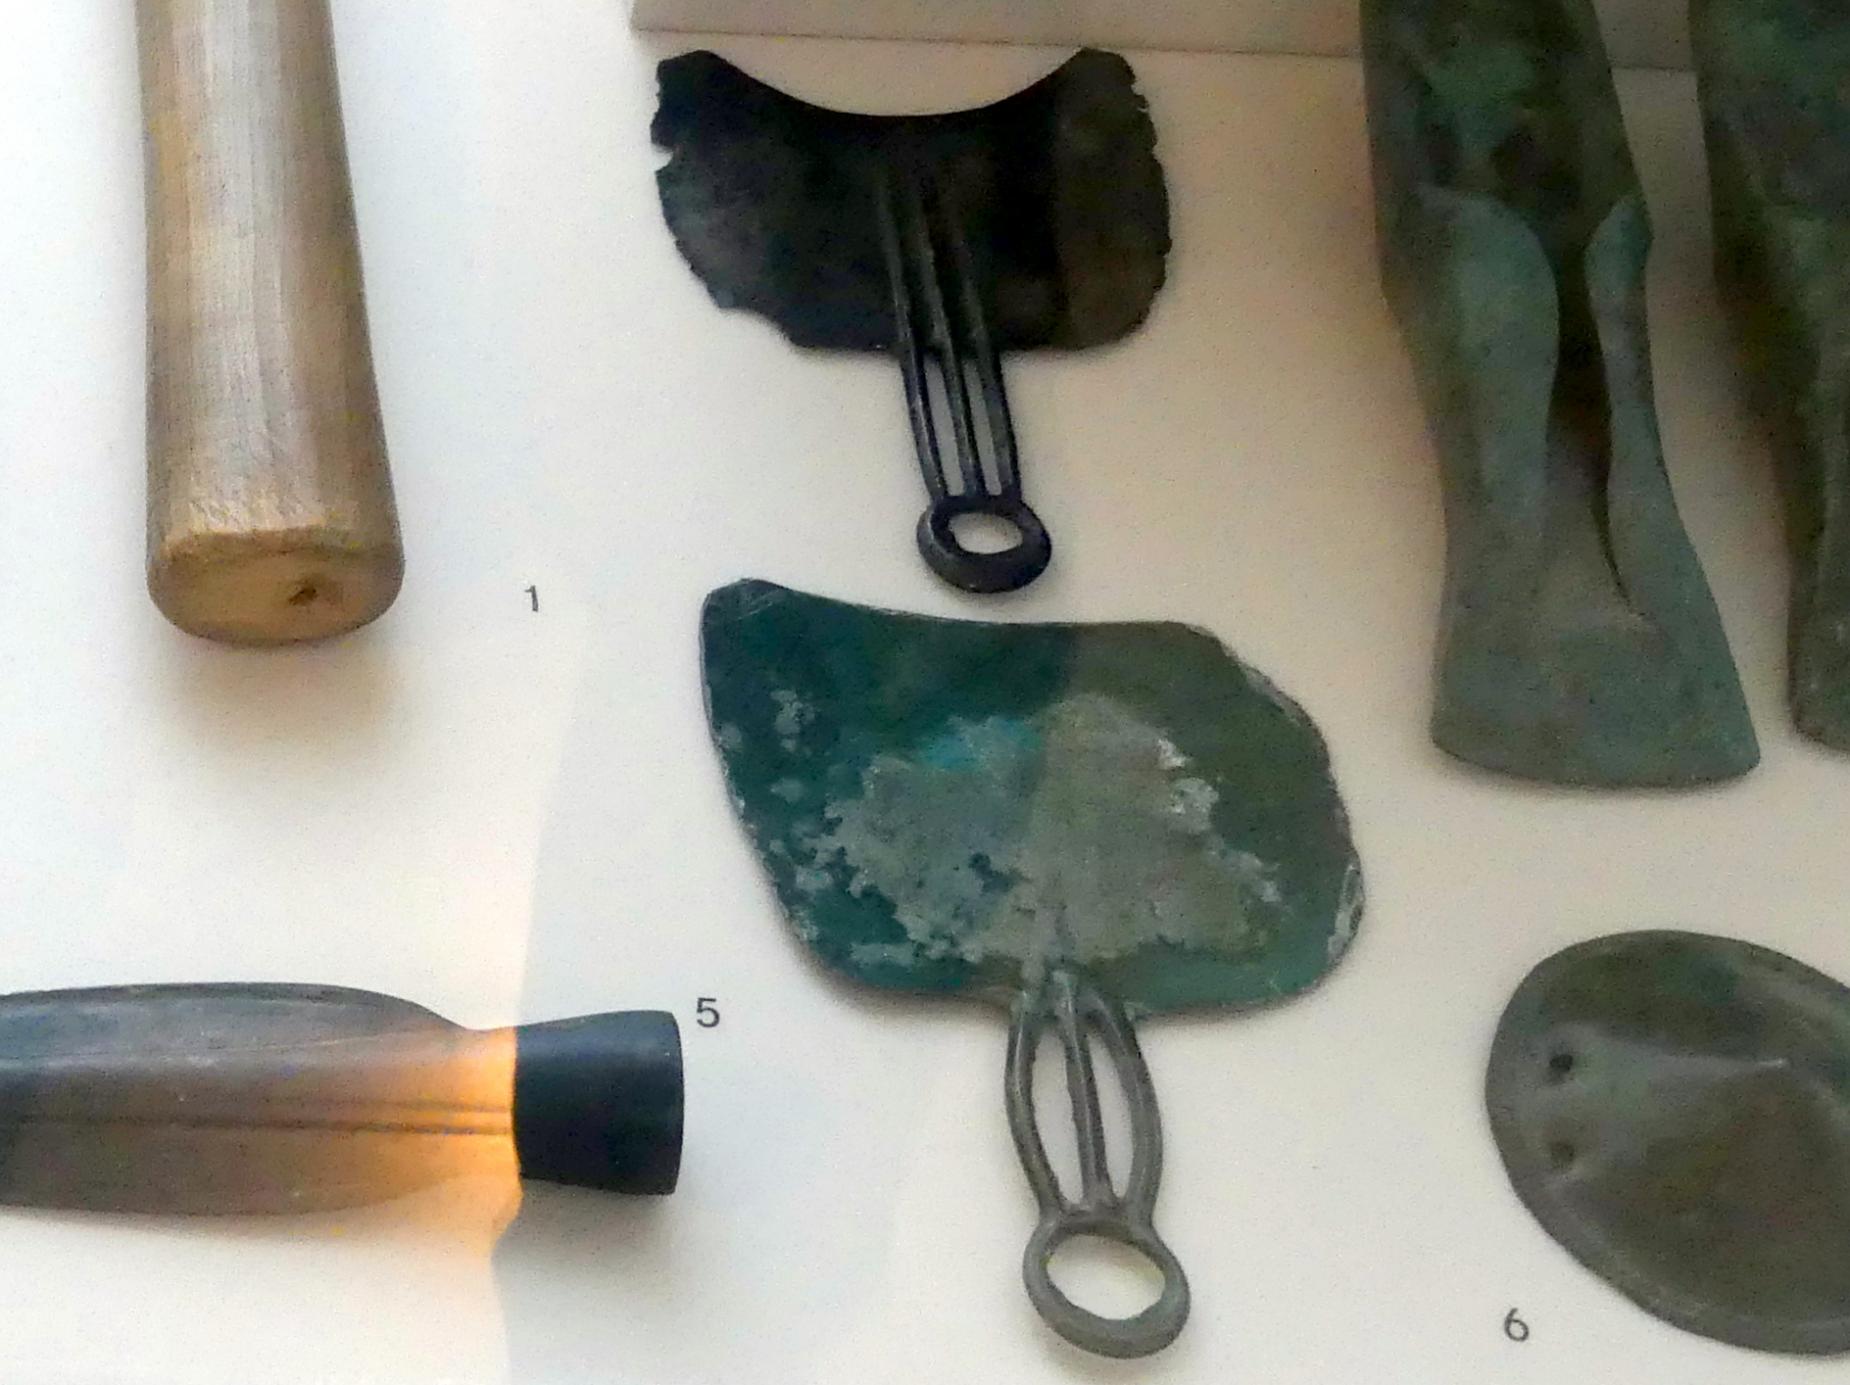 Rasiermesser, Urnenfelderzeit, 1400 - 700 v. Chr., 1300 - 1200 v. Chr.